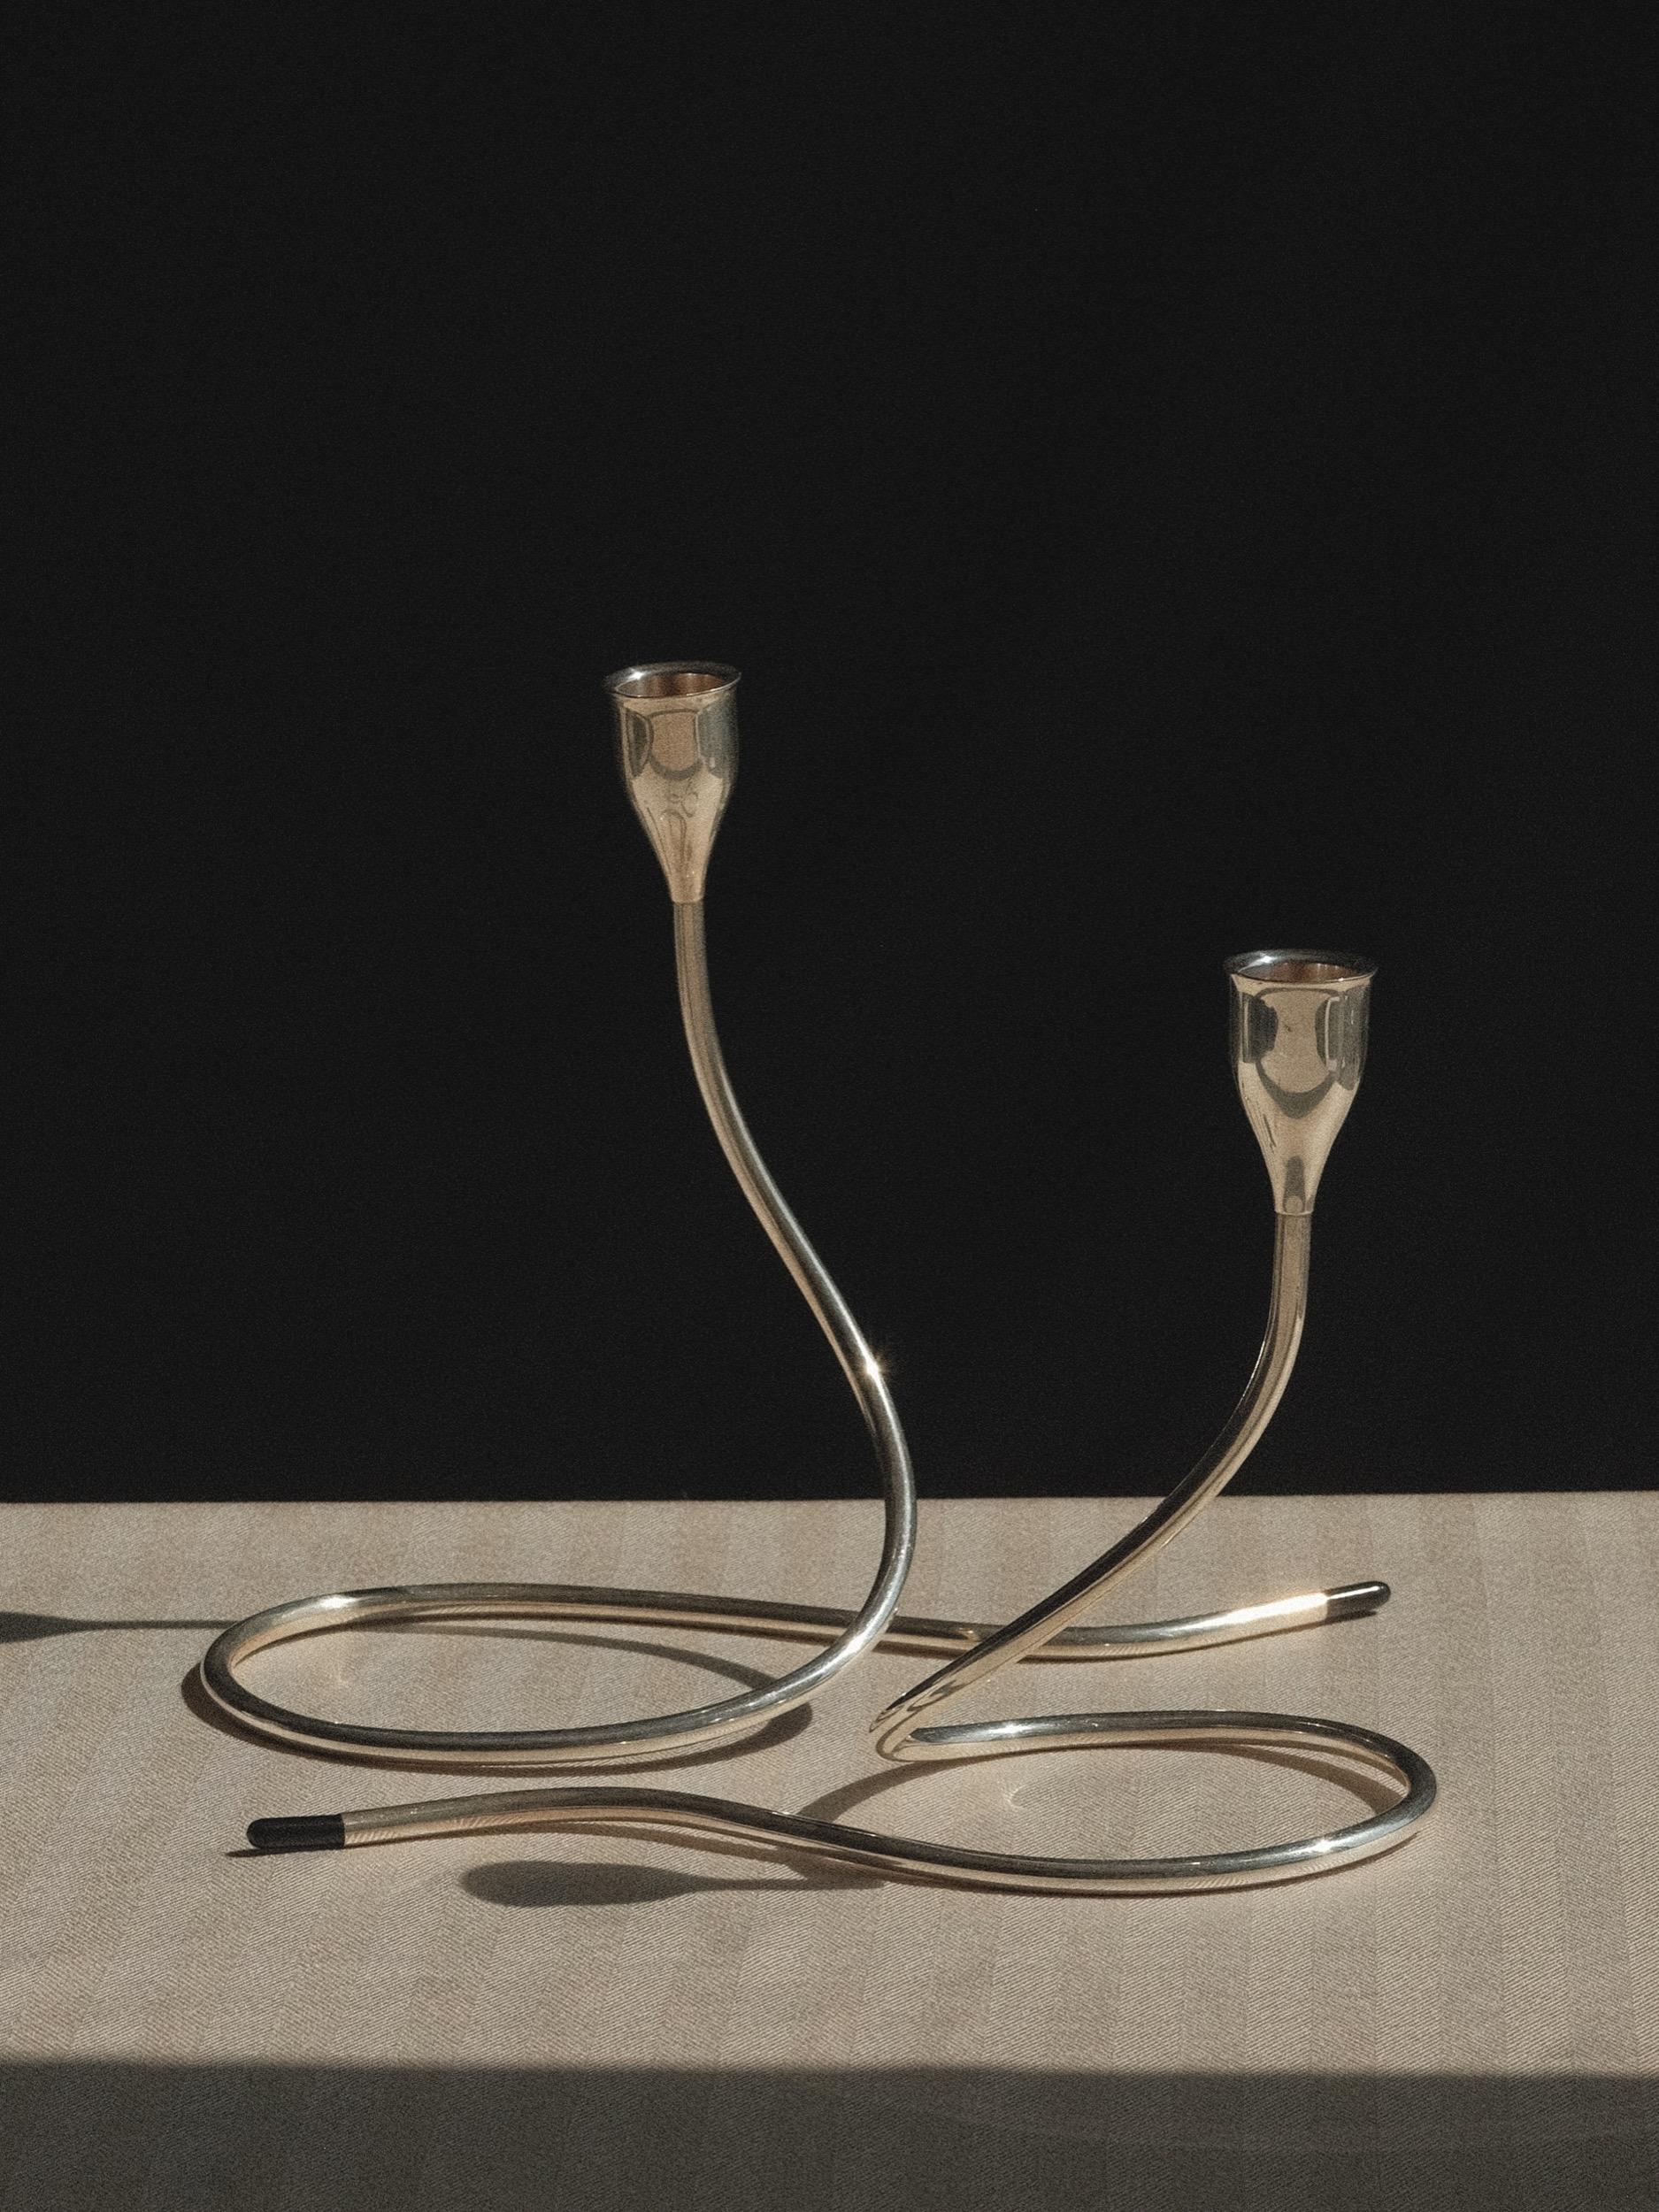 Paar Serpentine-Kerzenleuchter
Entworfen von Marion Anderson Noyes (1907-2002) für Towle Silversmiths
Der ausgestellte Kerzenbecher sitzt auf einem röhrenförmigen, geschwungenen Stiel, der sich romantisch ineinander verschlingen oder skulptural für